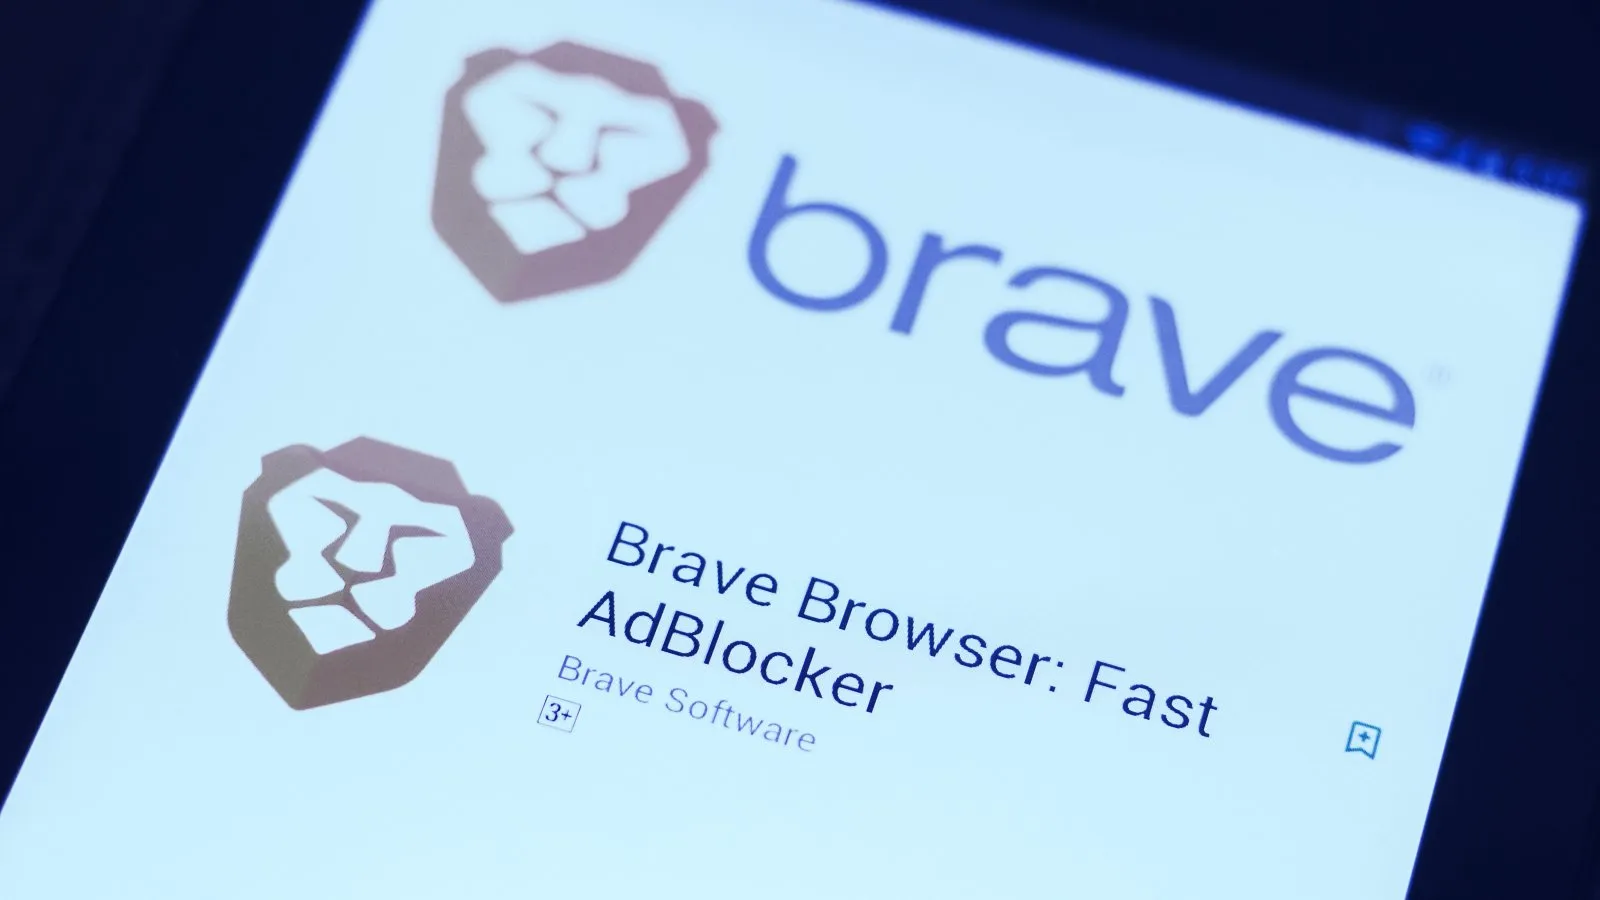 Brave ha sido atrapado violando la confianza de los usuarios. Imagen: Shutterstock